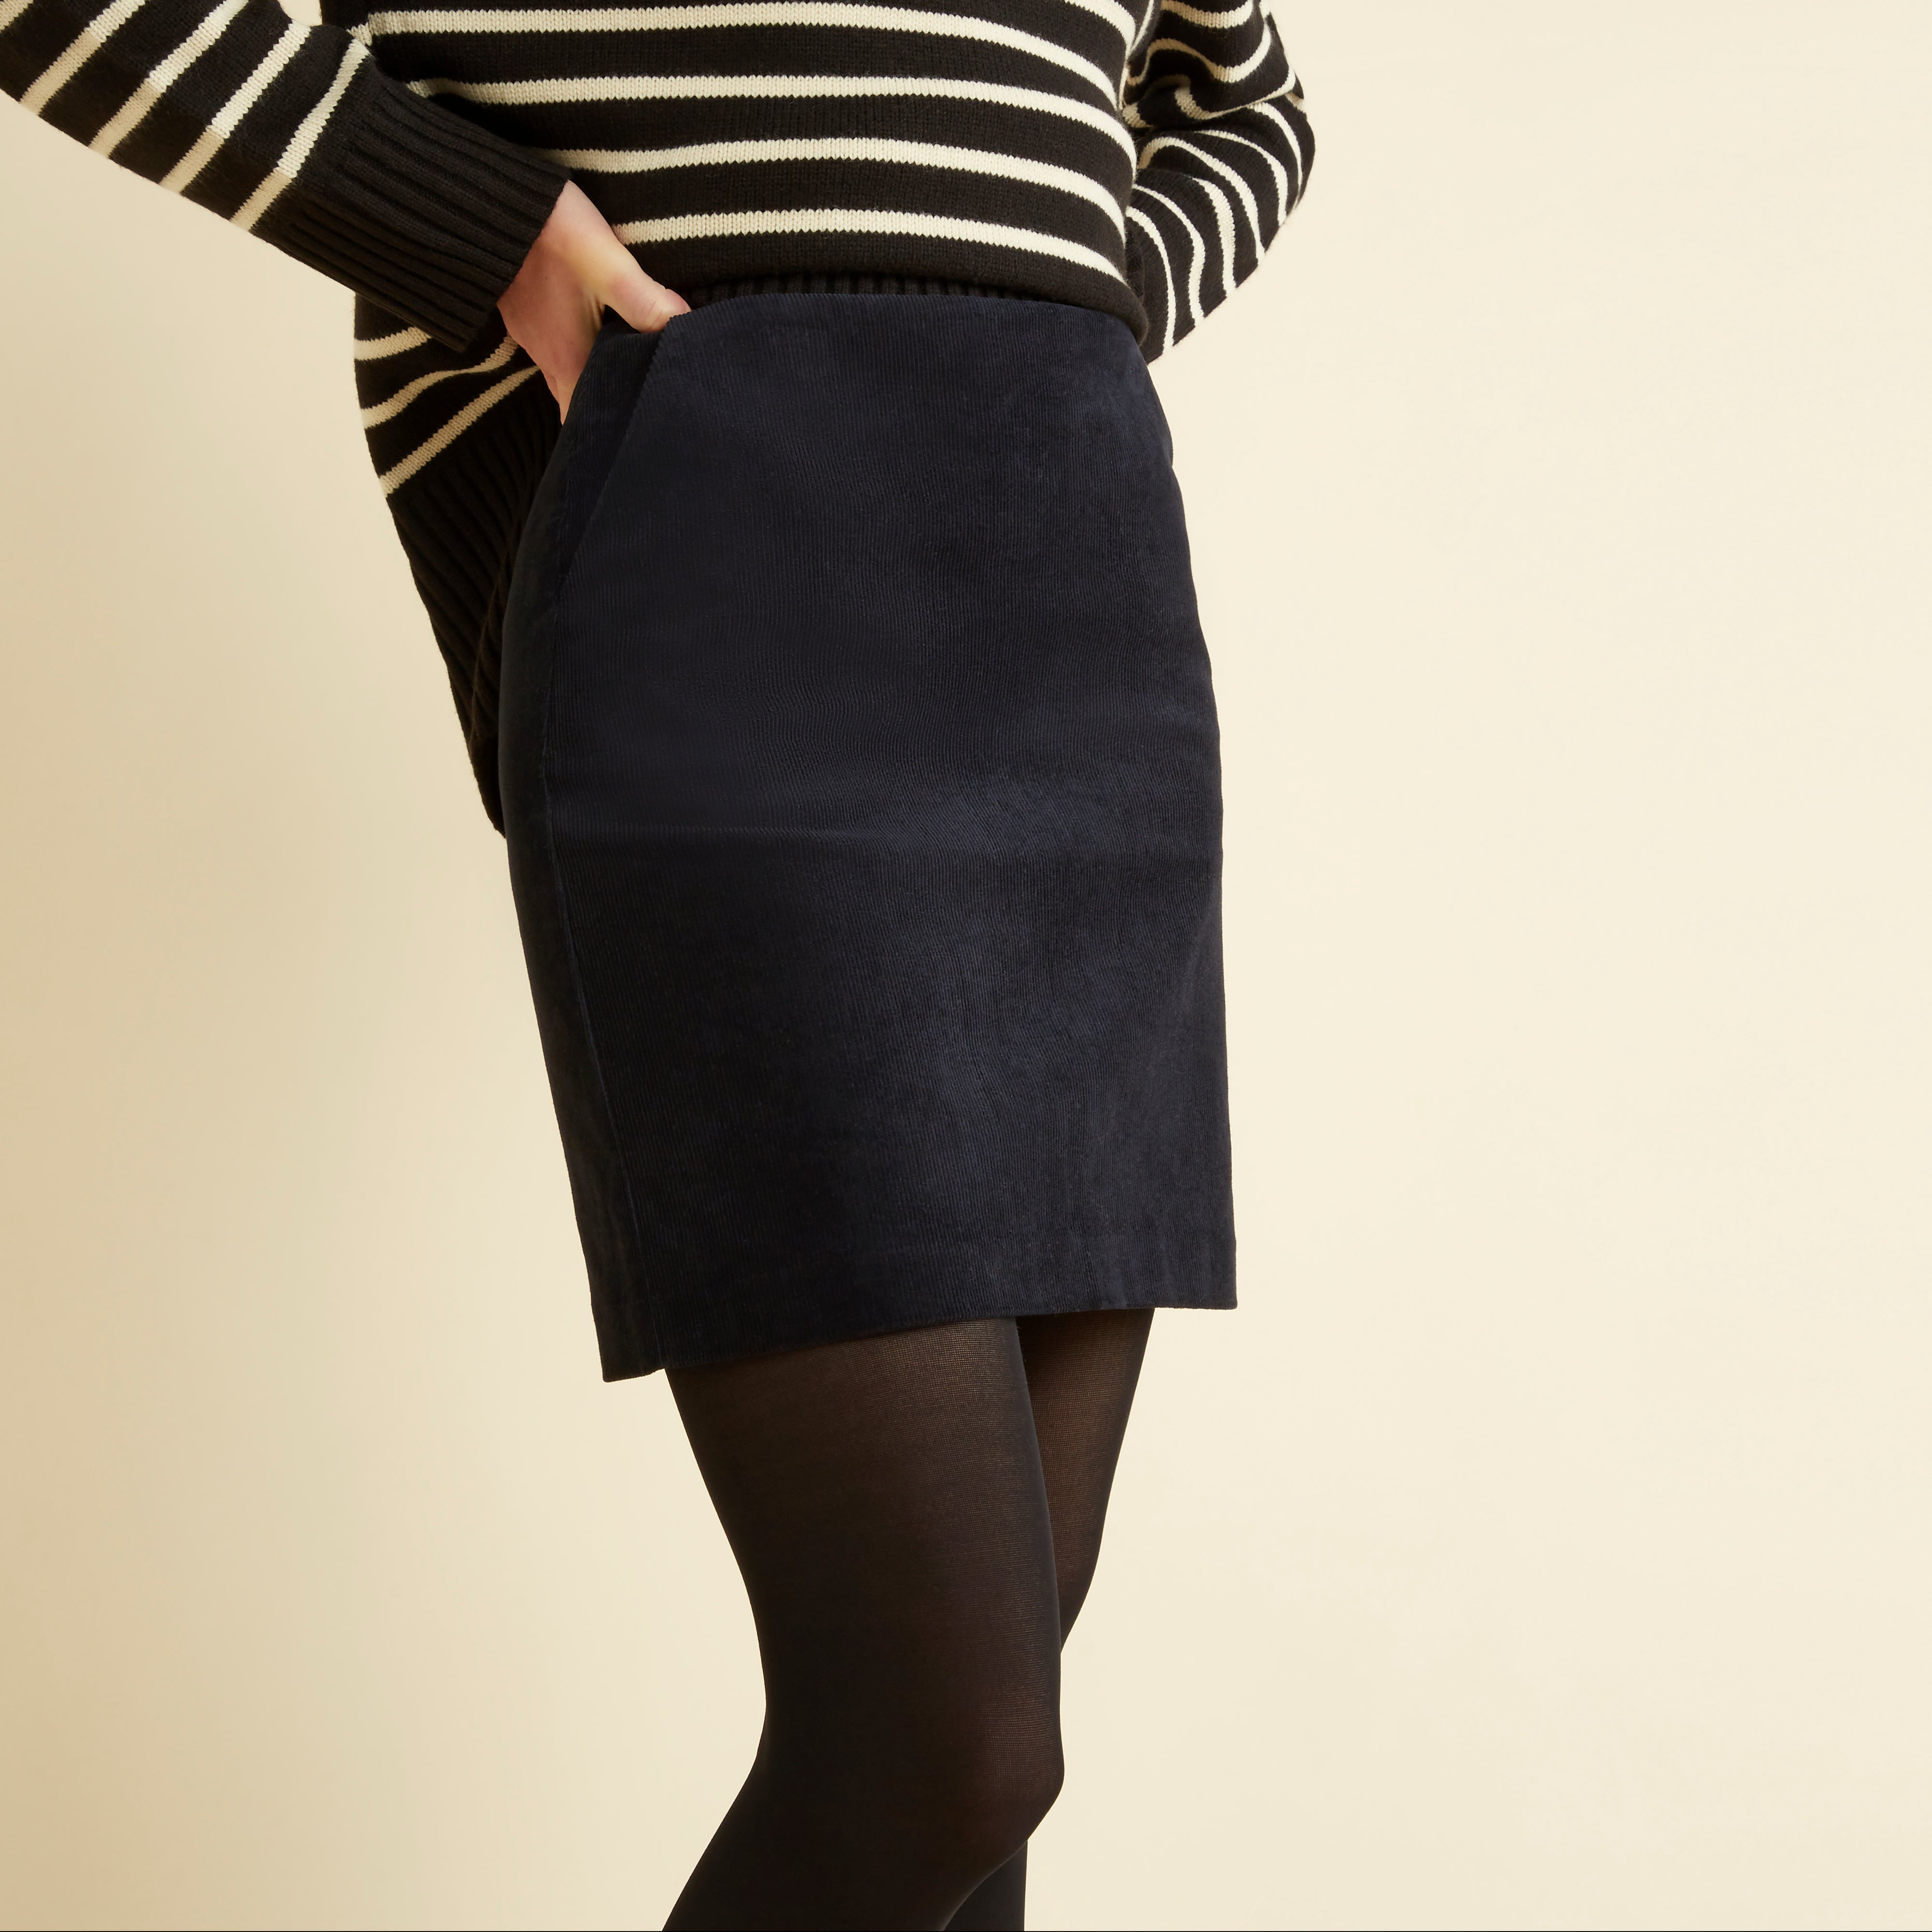 Black Cord Short Skirt